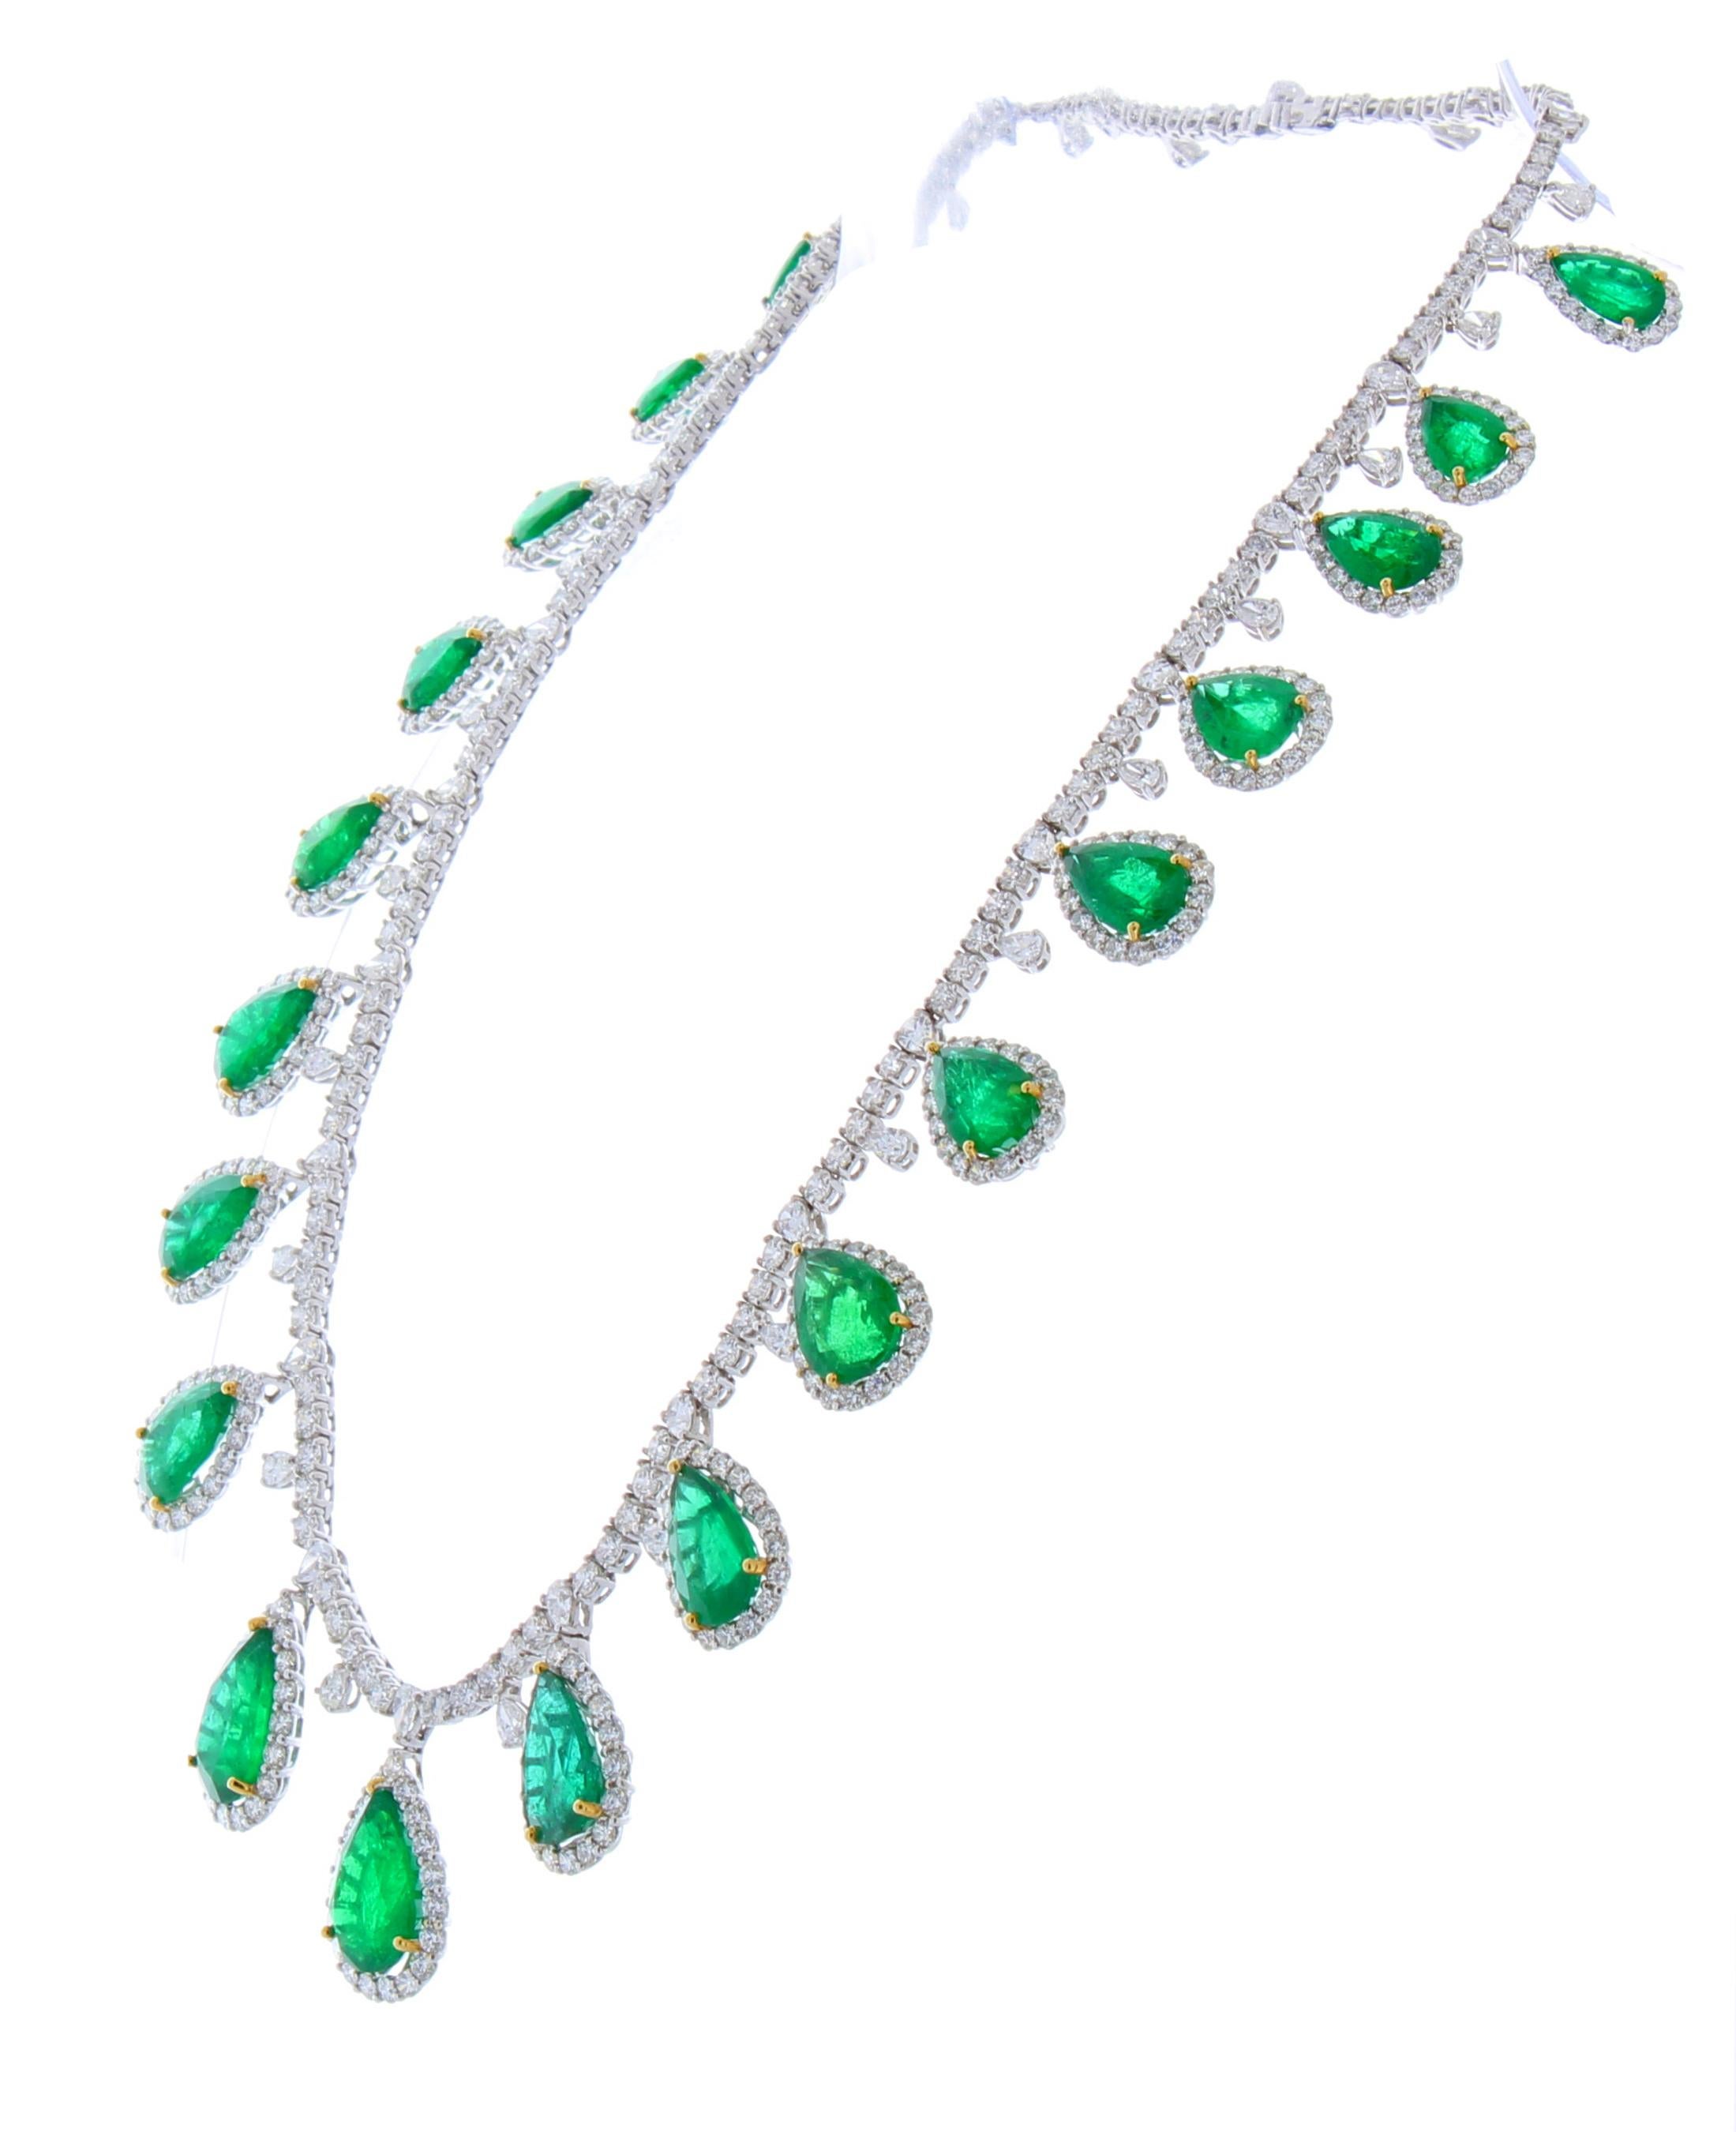 50.34 Carat Total Pear Shaped Emerald and Diamond Necklace in 18 Karat Gold (Zeitgenössisch)